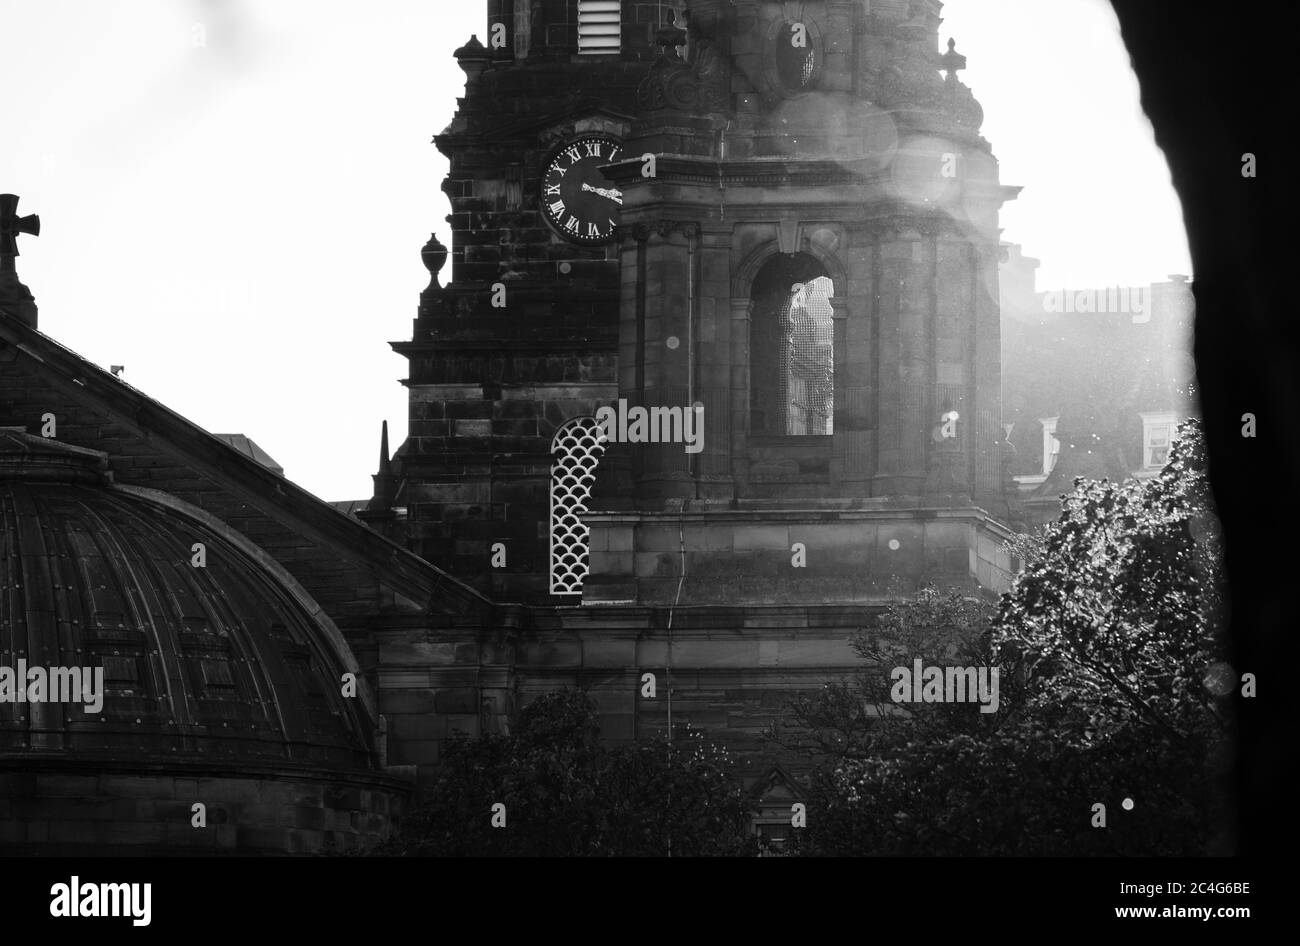 Monochrome (schwarz-weiß) Darstellung der Pfarrkirche St. Cuthbert am westlichen Ende der Princes Street Gardens, Edinburgh, Schottland, Großbritannien. Stockfoto